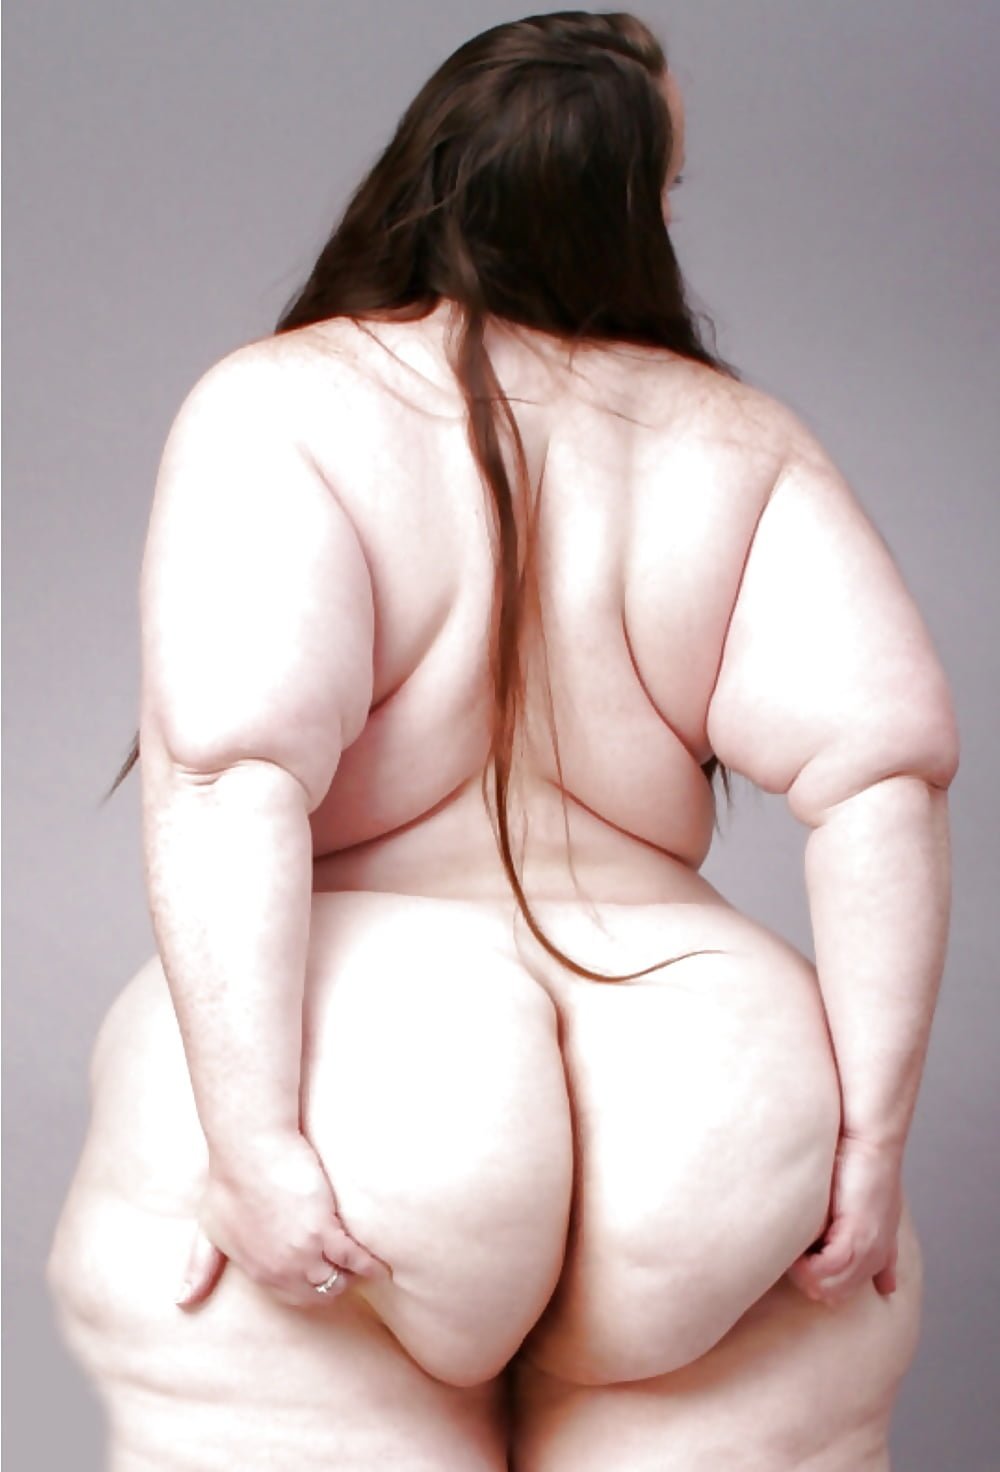 огромная жопа толстой девушки фото 88